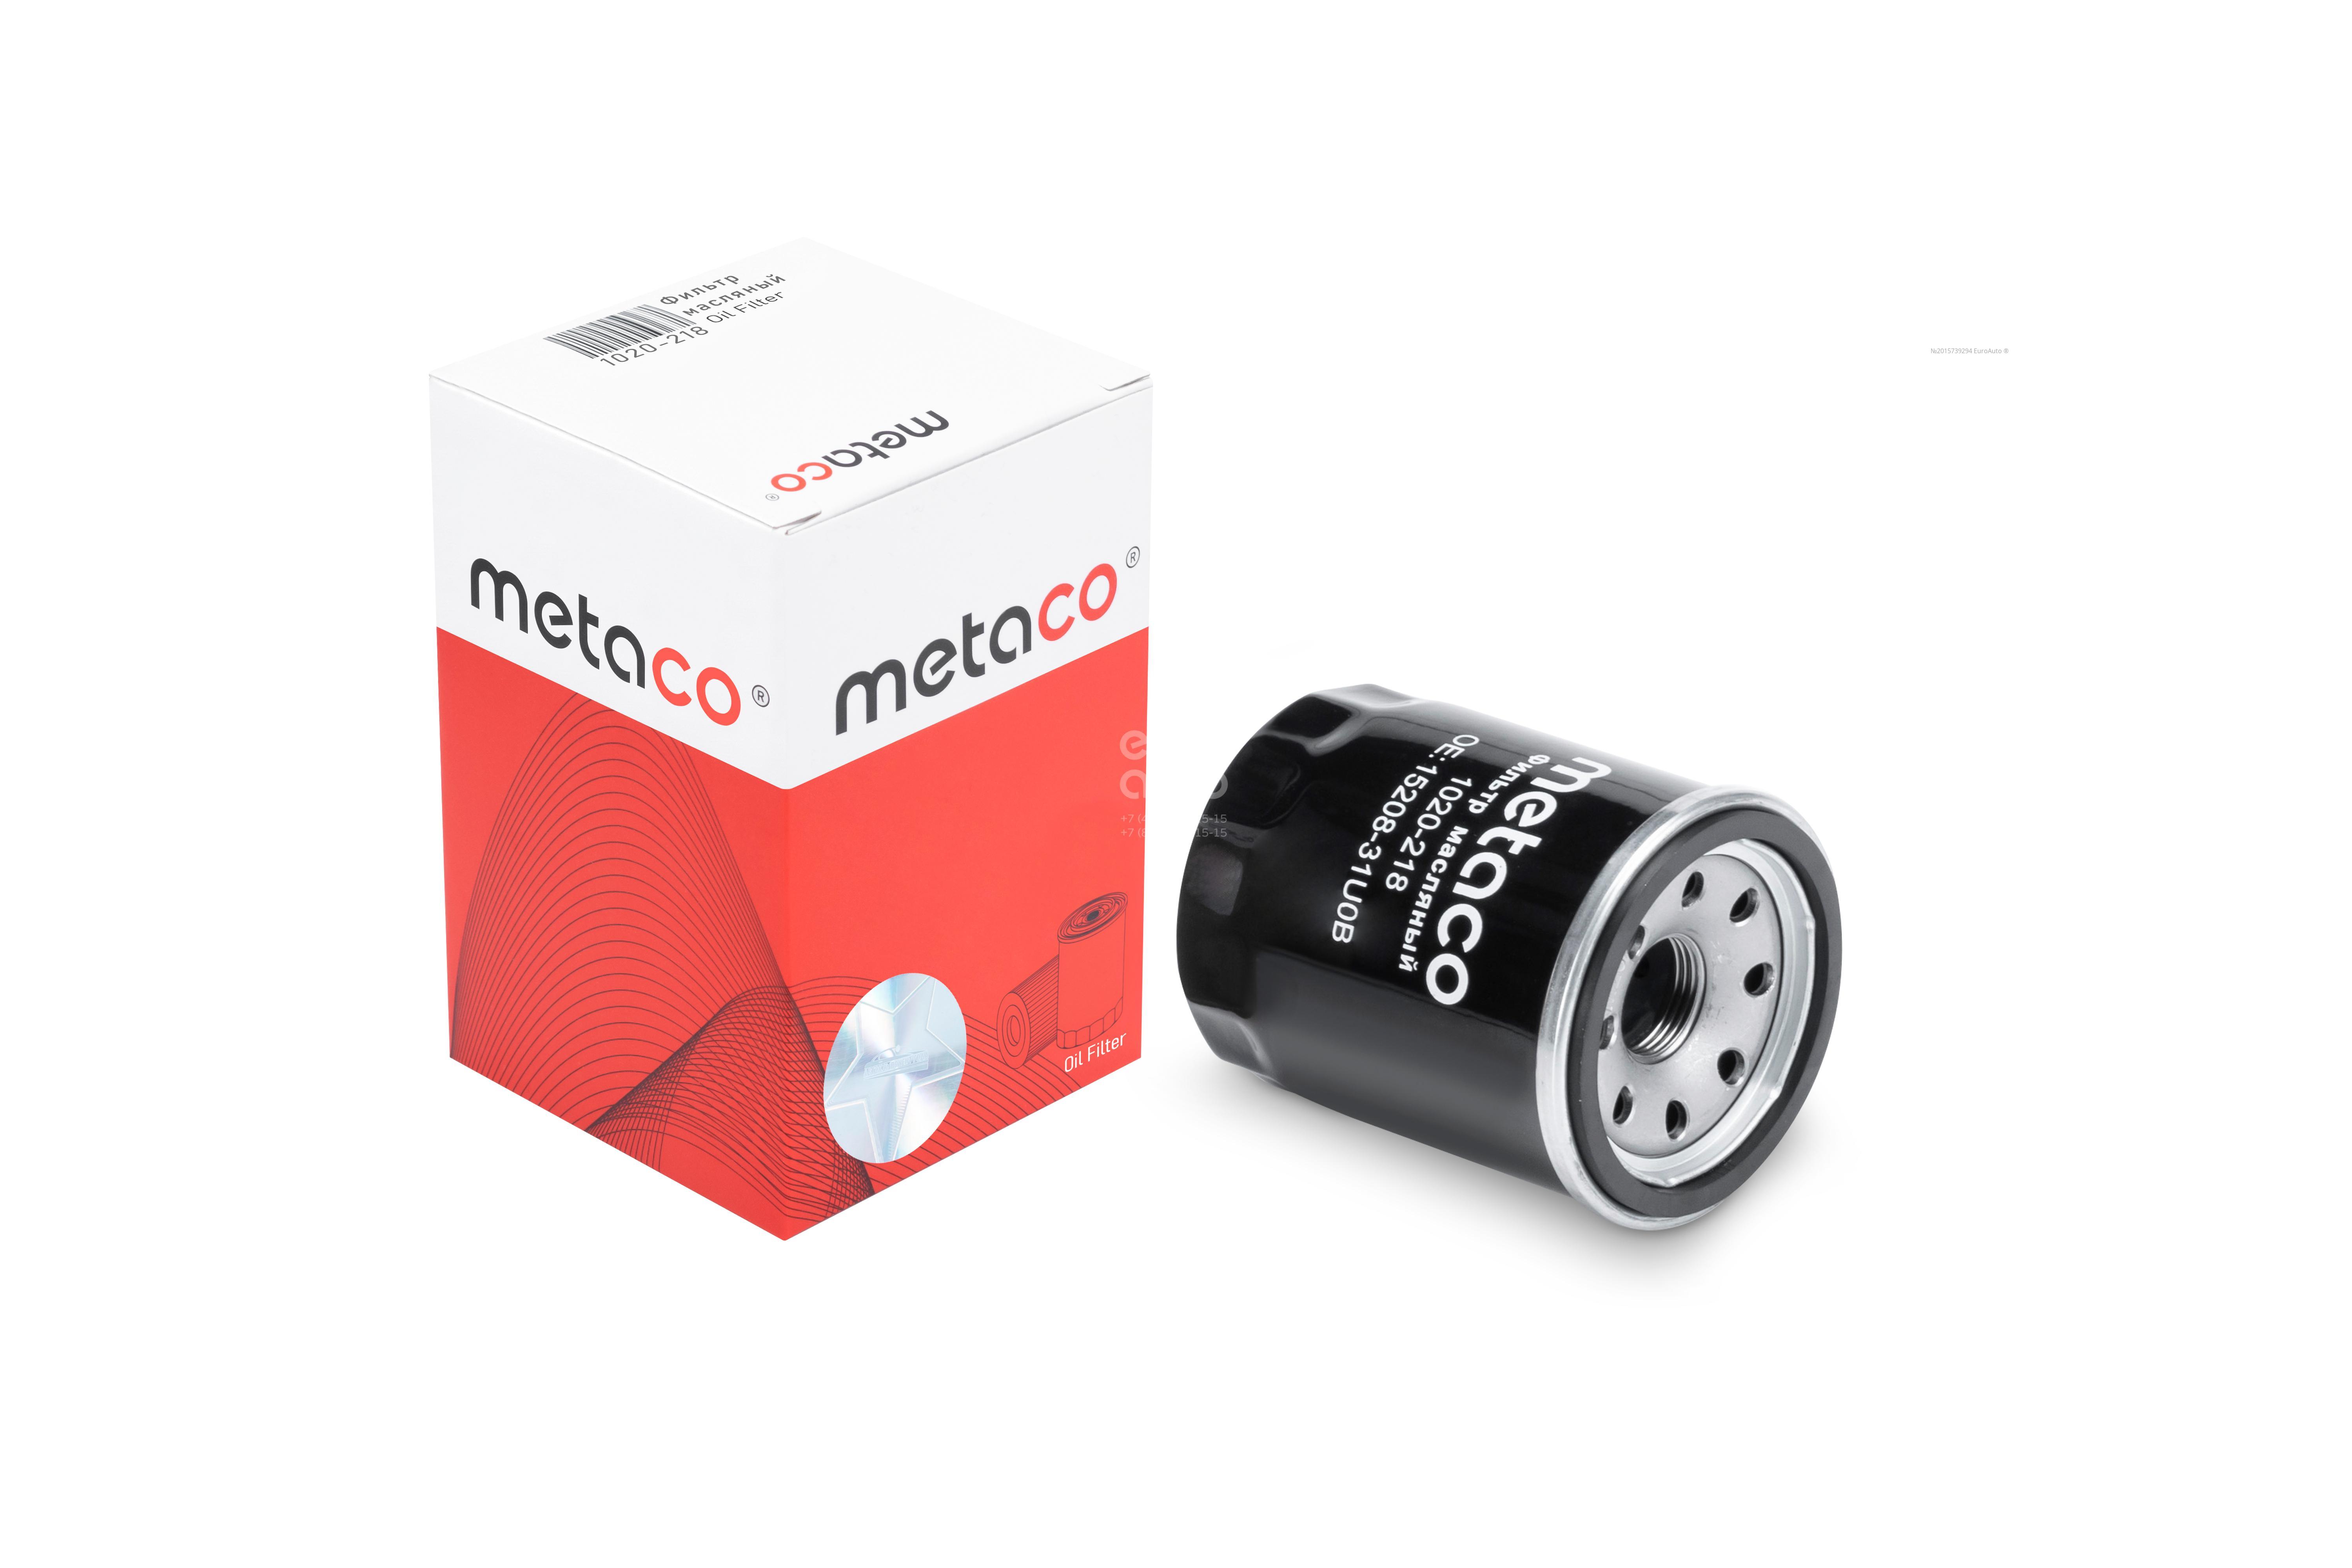 Фильтр воздушный metaco. 1020-028 Metaco фильтр масляный. Md360935 фильтр масляный. 1020-028 Metaco. 1020-222 Metaco фильтр масляный.